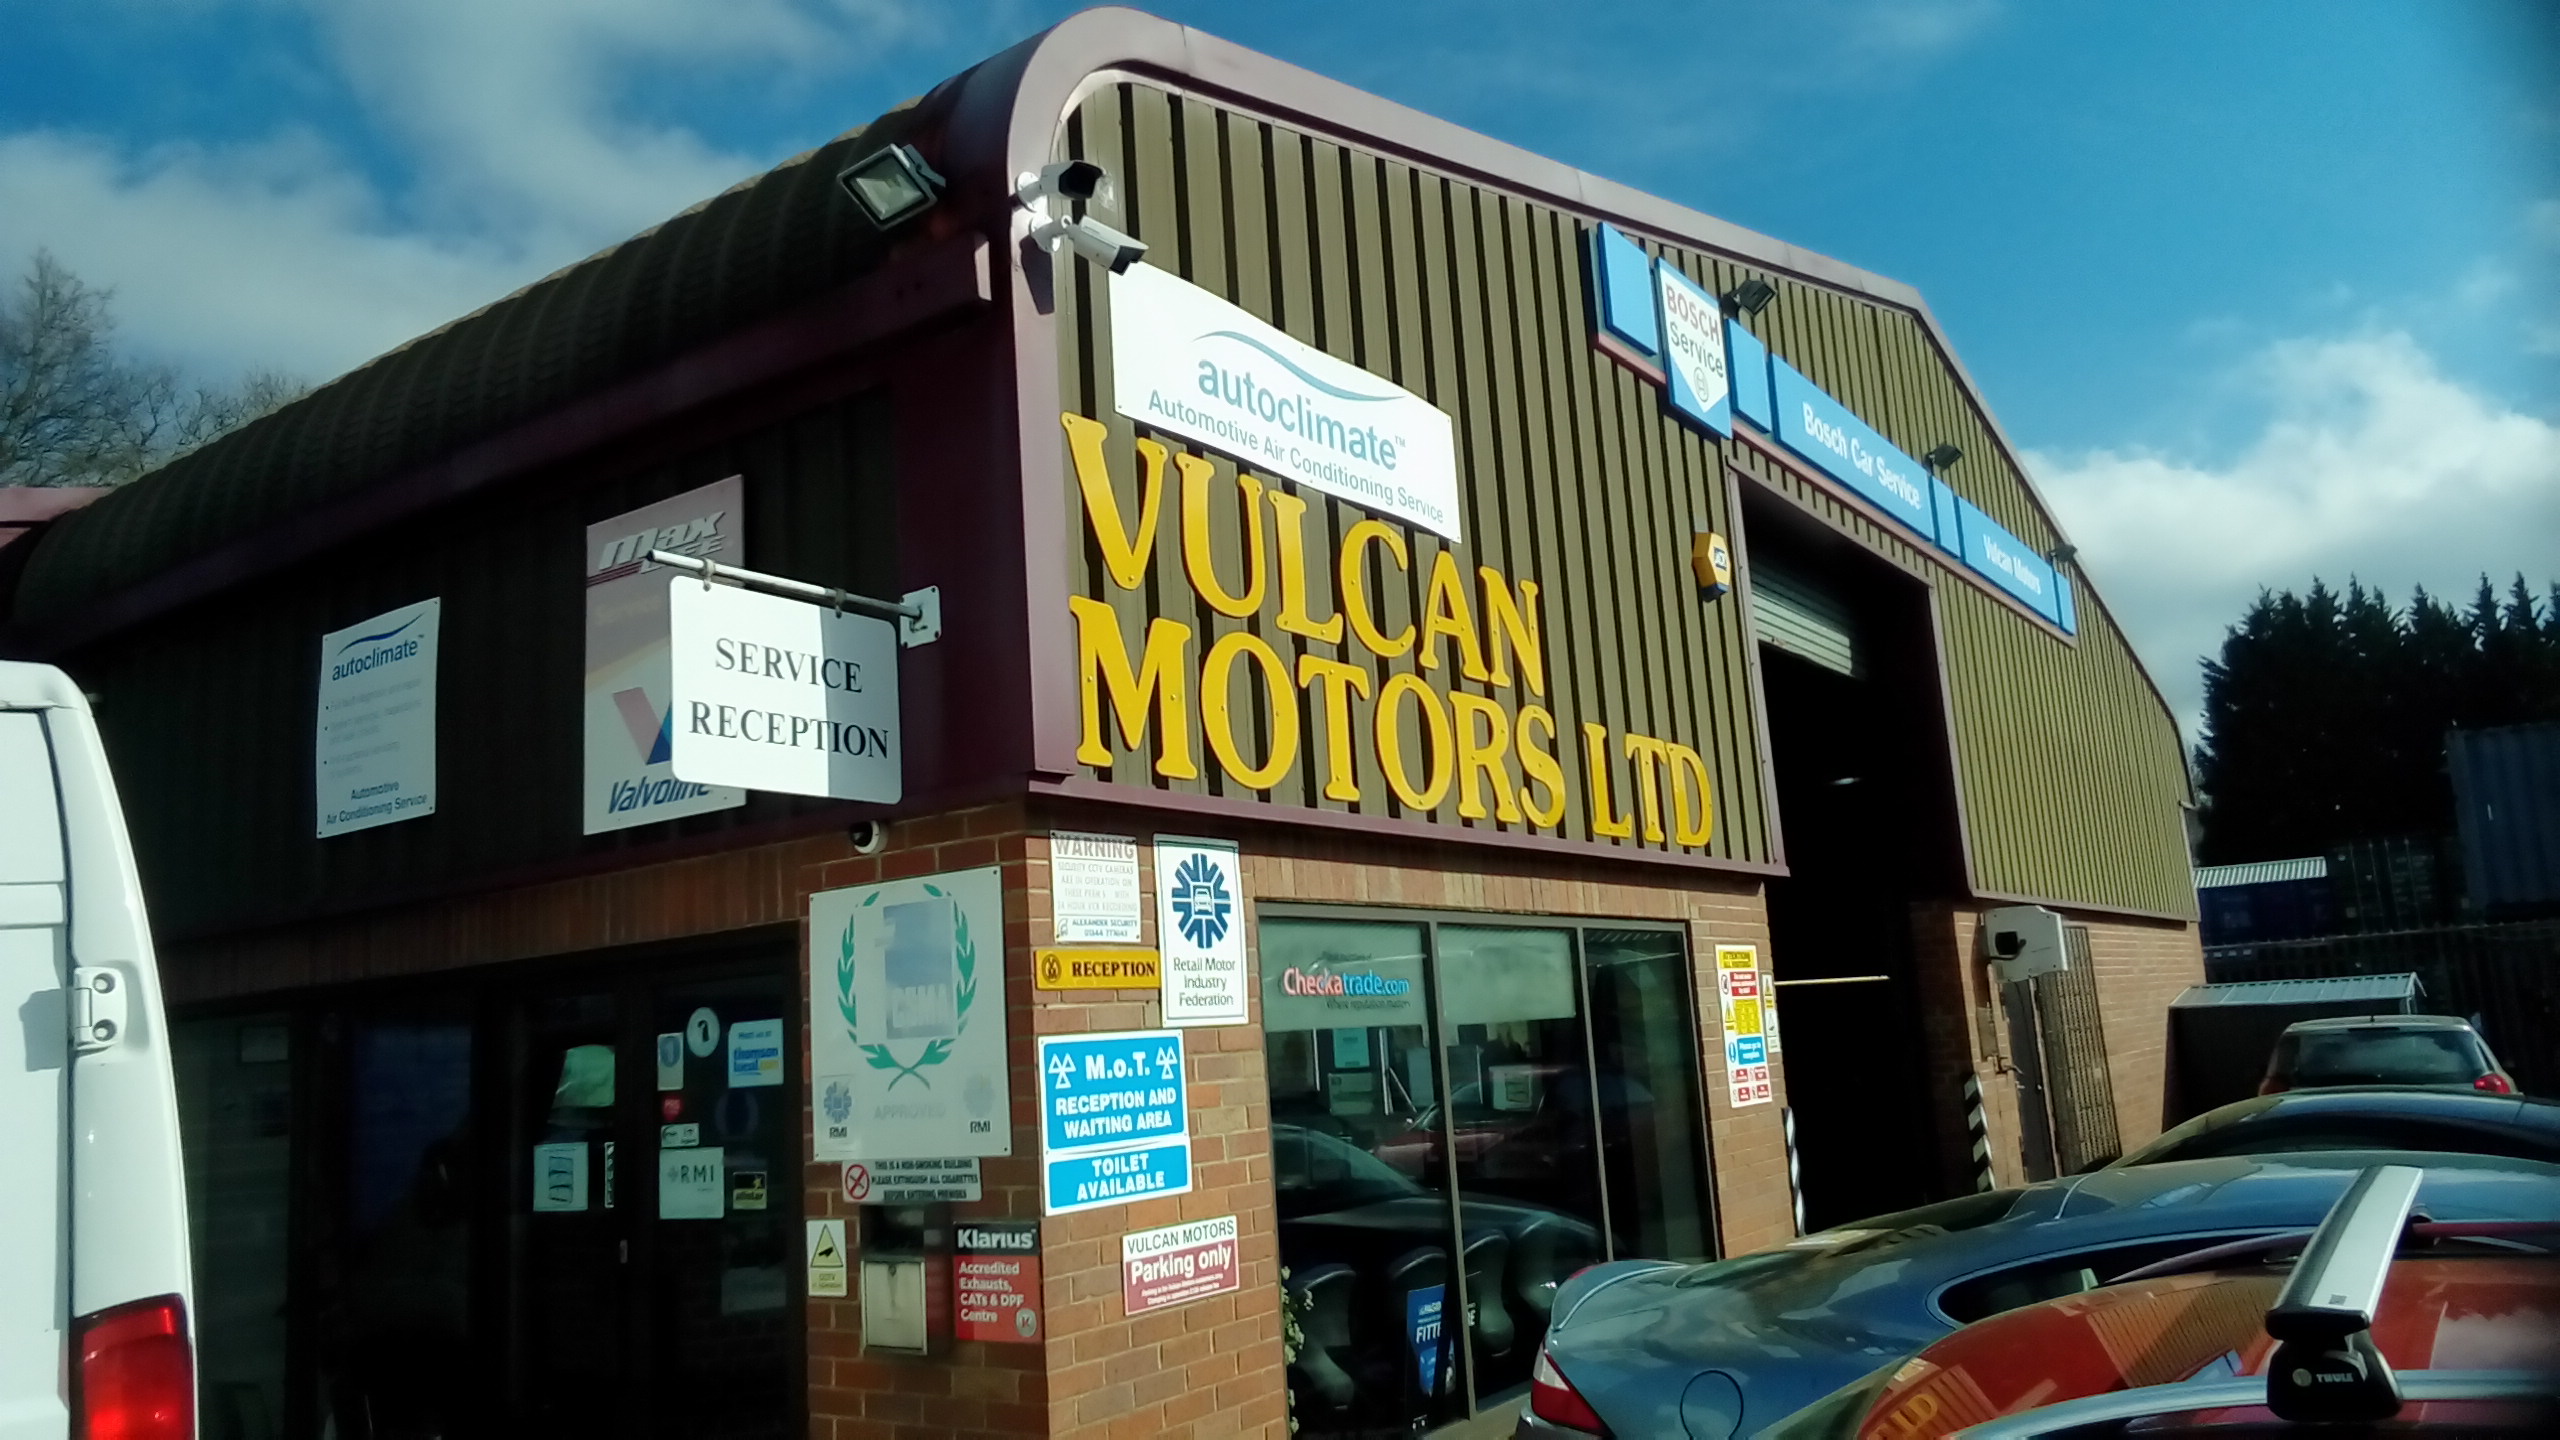 Image 5 of Vulcan Motors Ltd